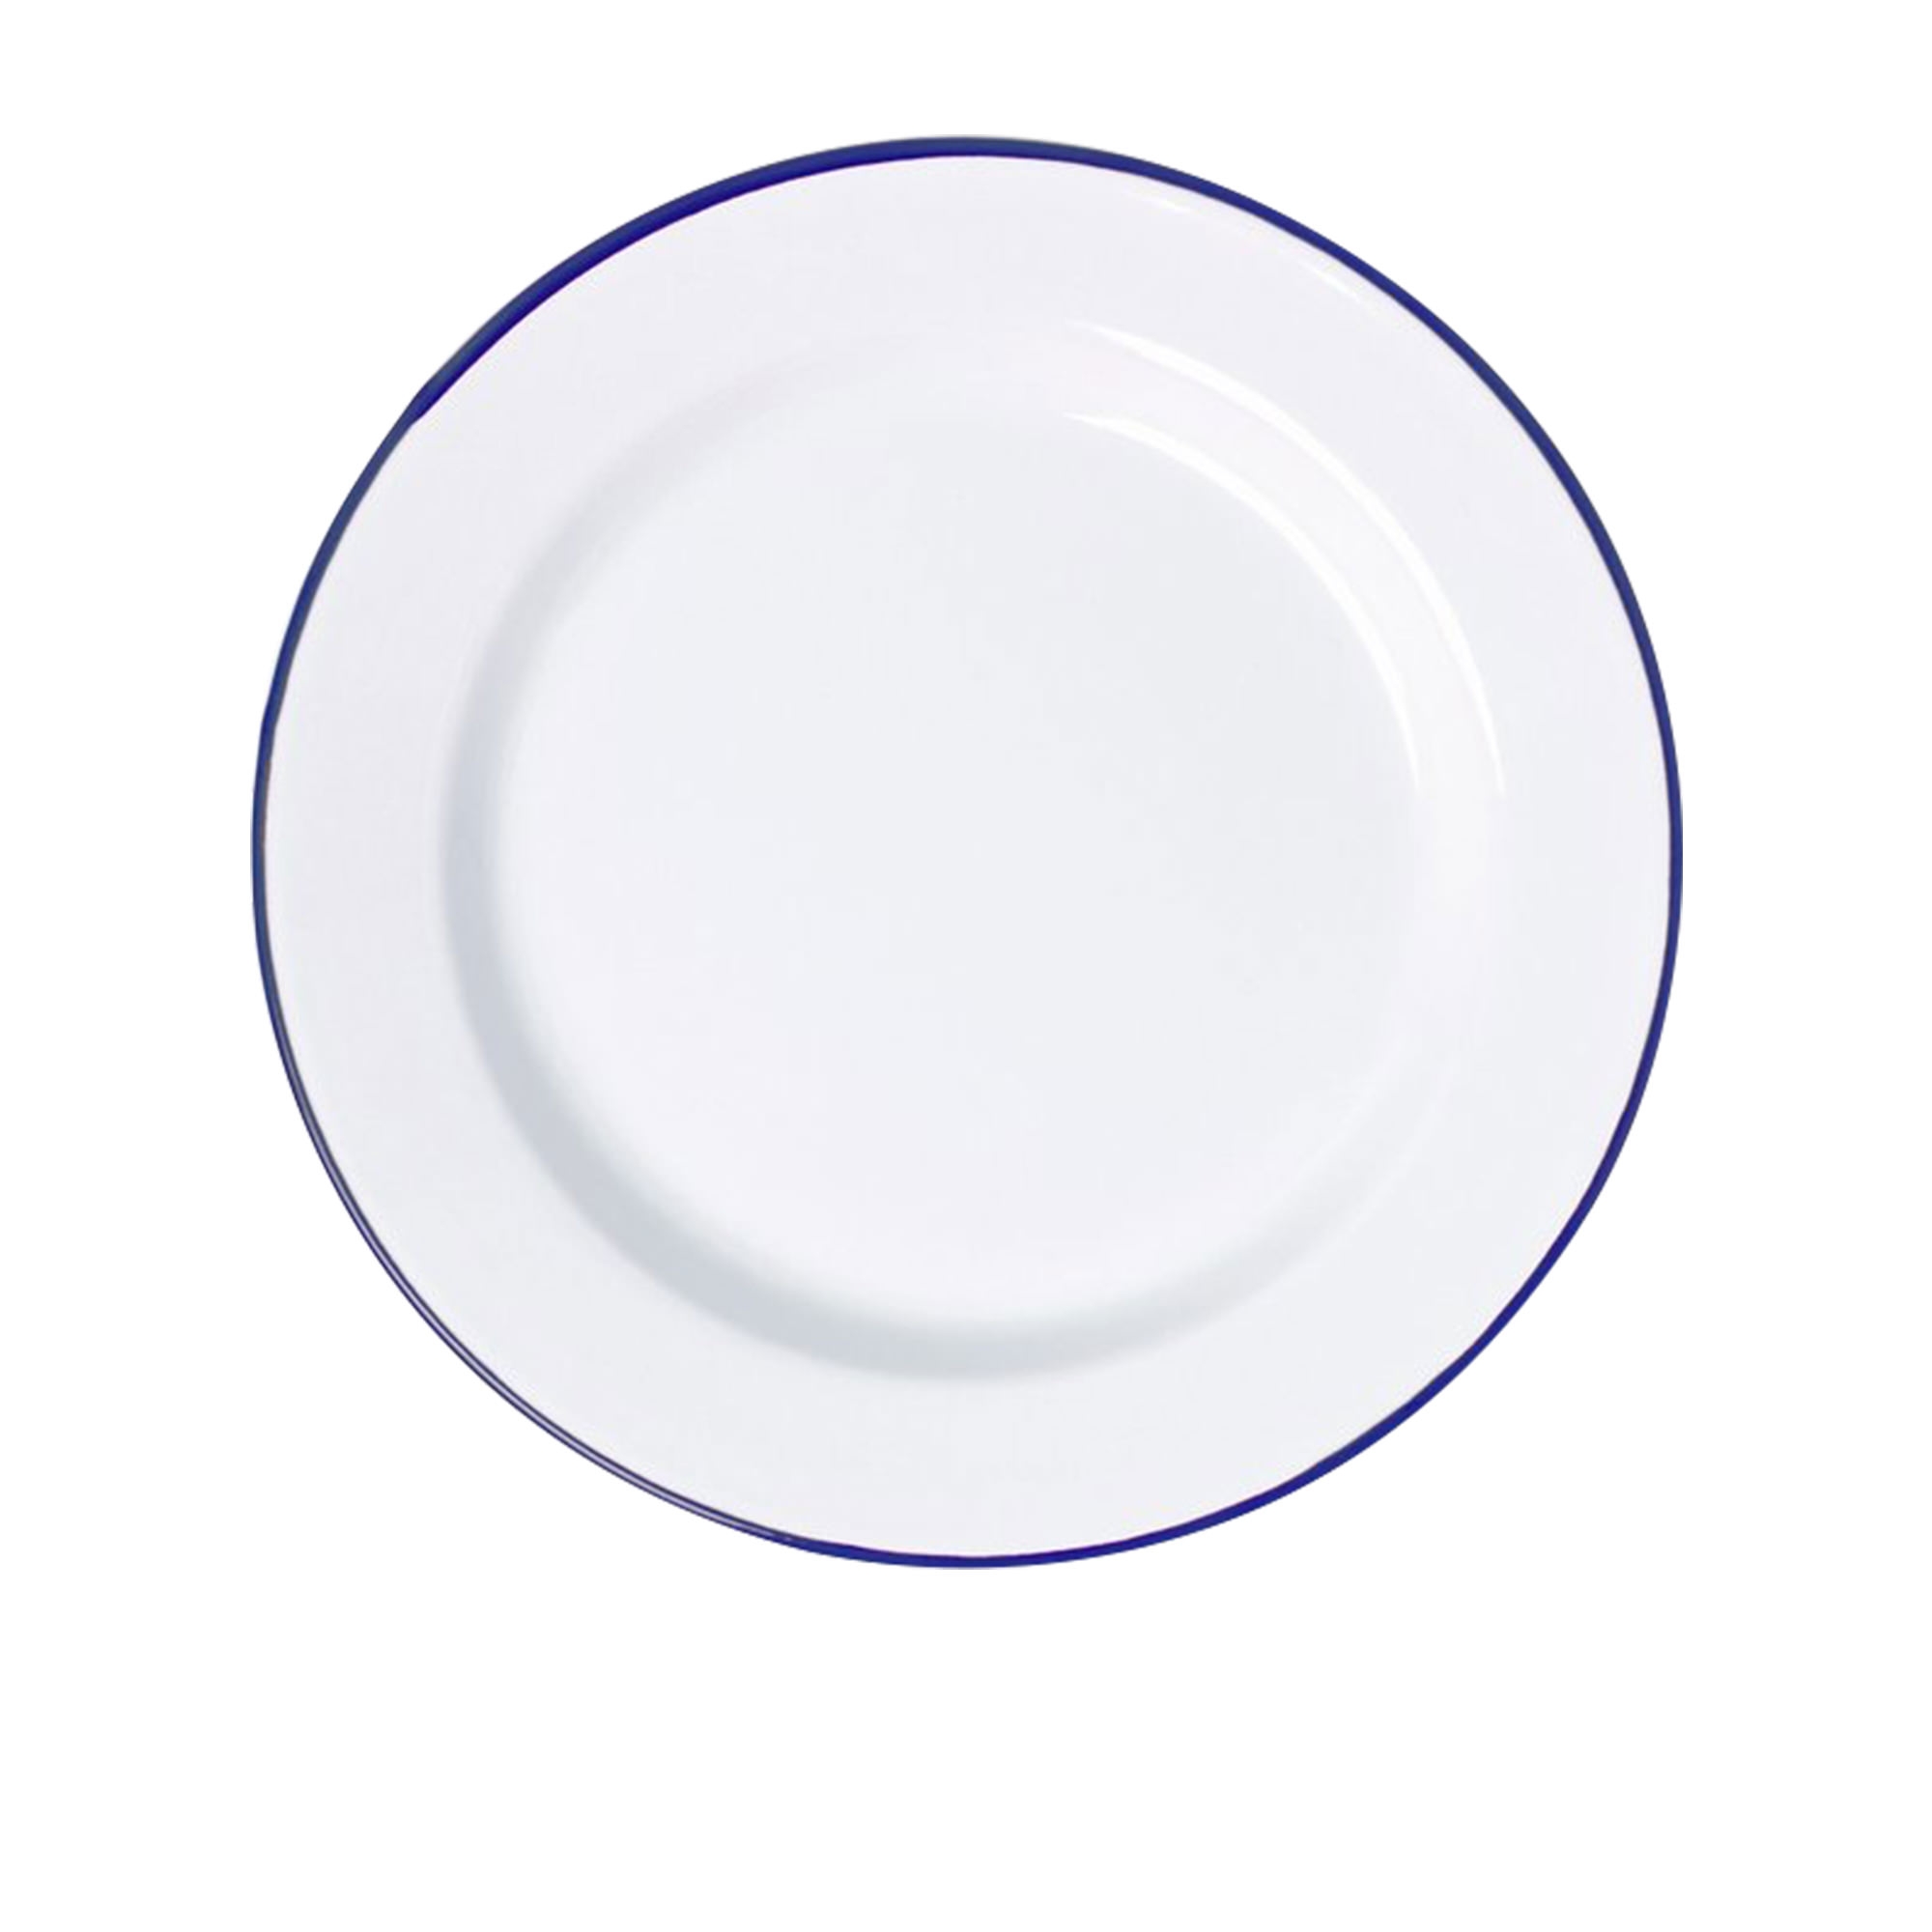 Falcon Enamelware Dinner Plate 26cm White Image 1